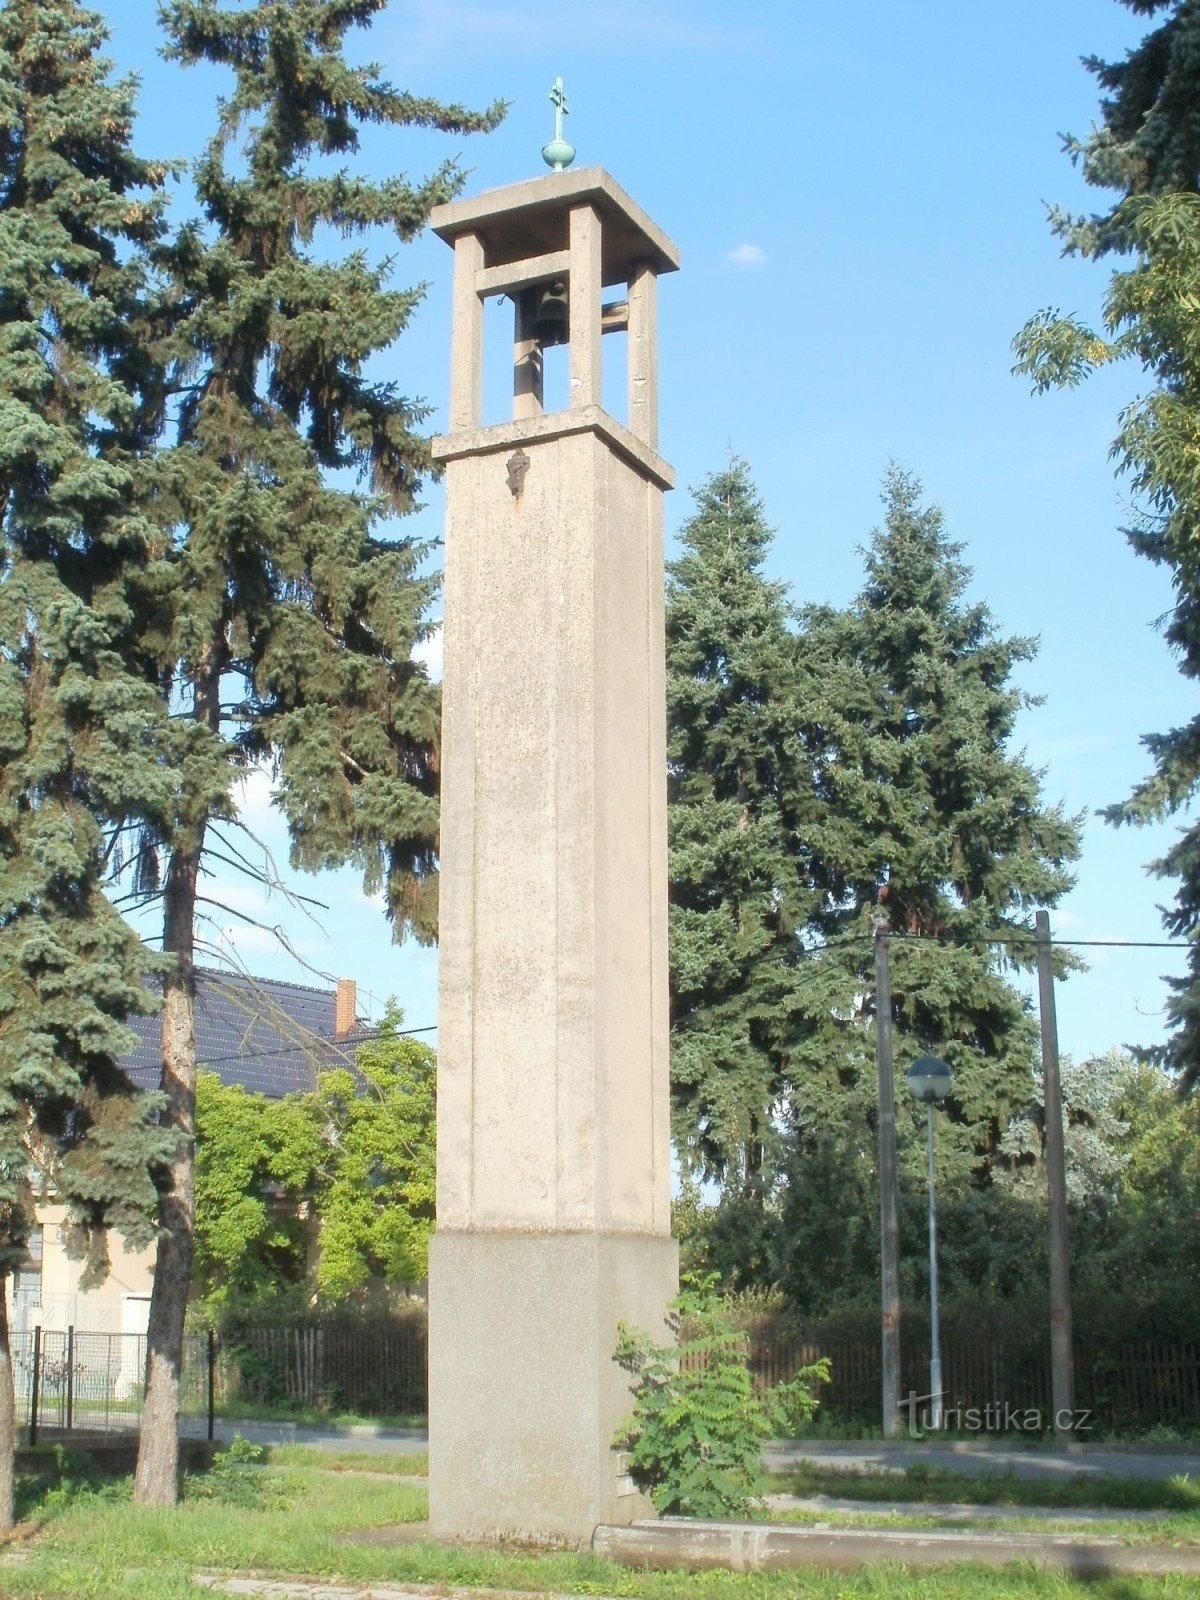 Hradec Králové - Pouchov 的钟楼